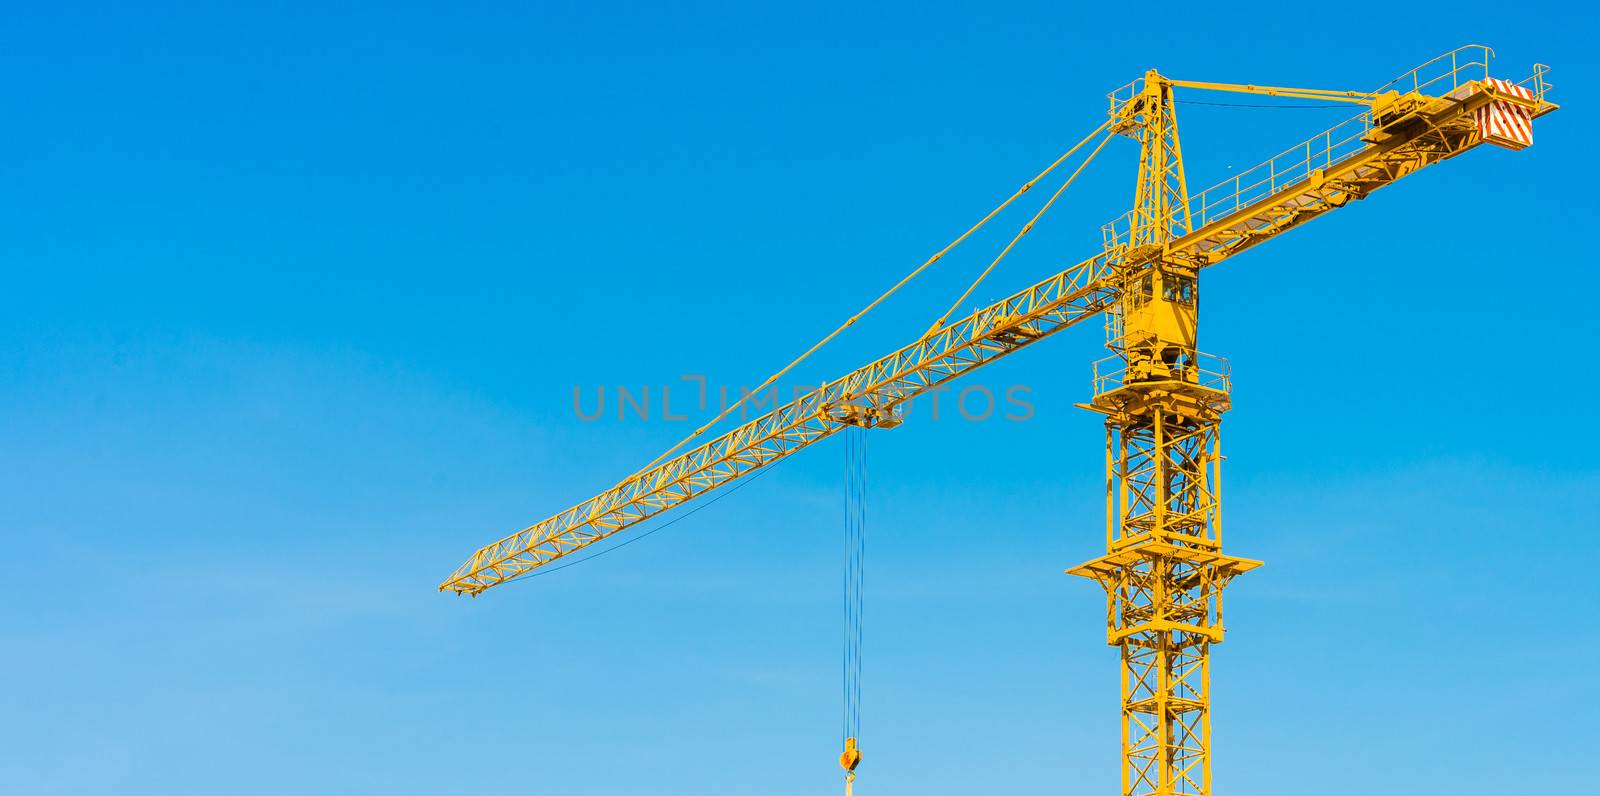 hoisting crane and blue sky by moggara12